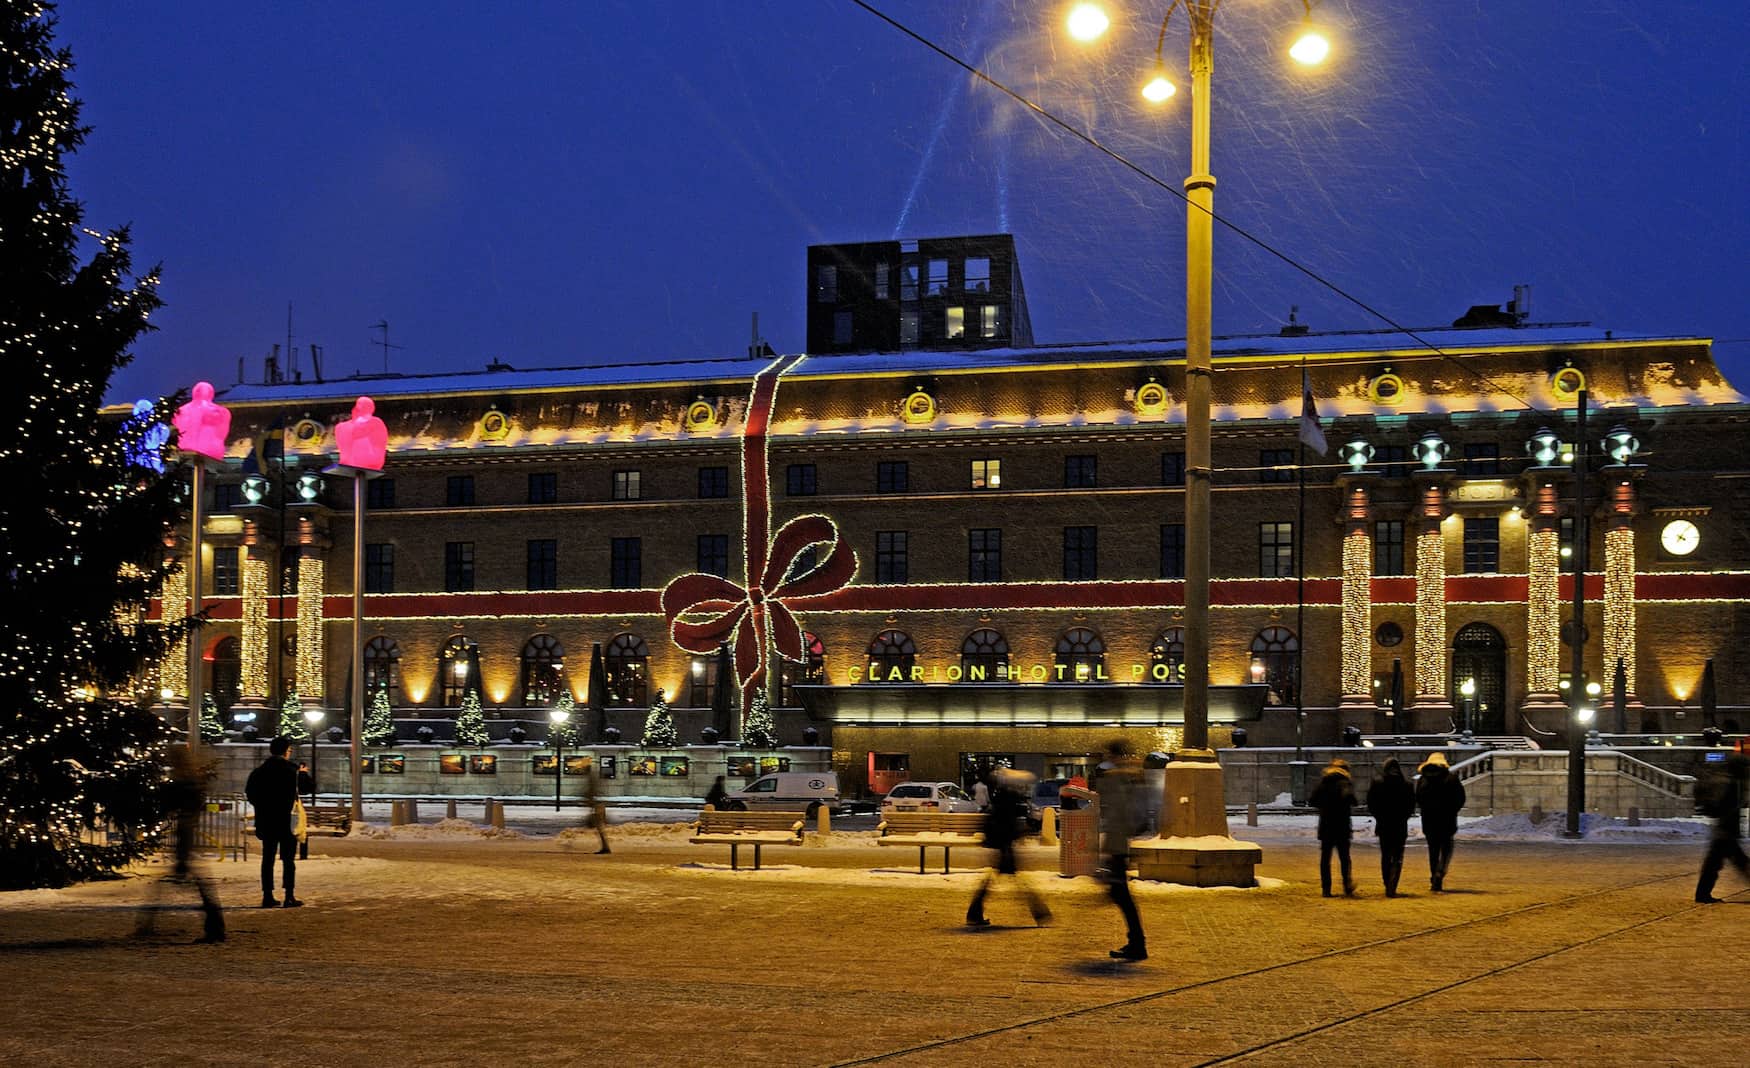 Die Weihnachtsmärkte von Göteborg überzeugen mit stimmungsvollen Lichtinstallationen.